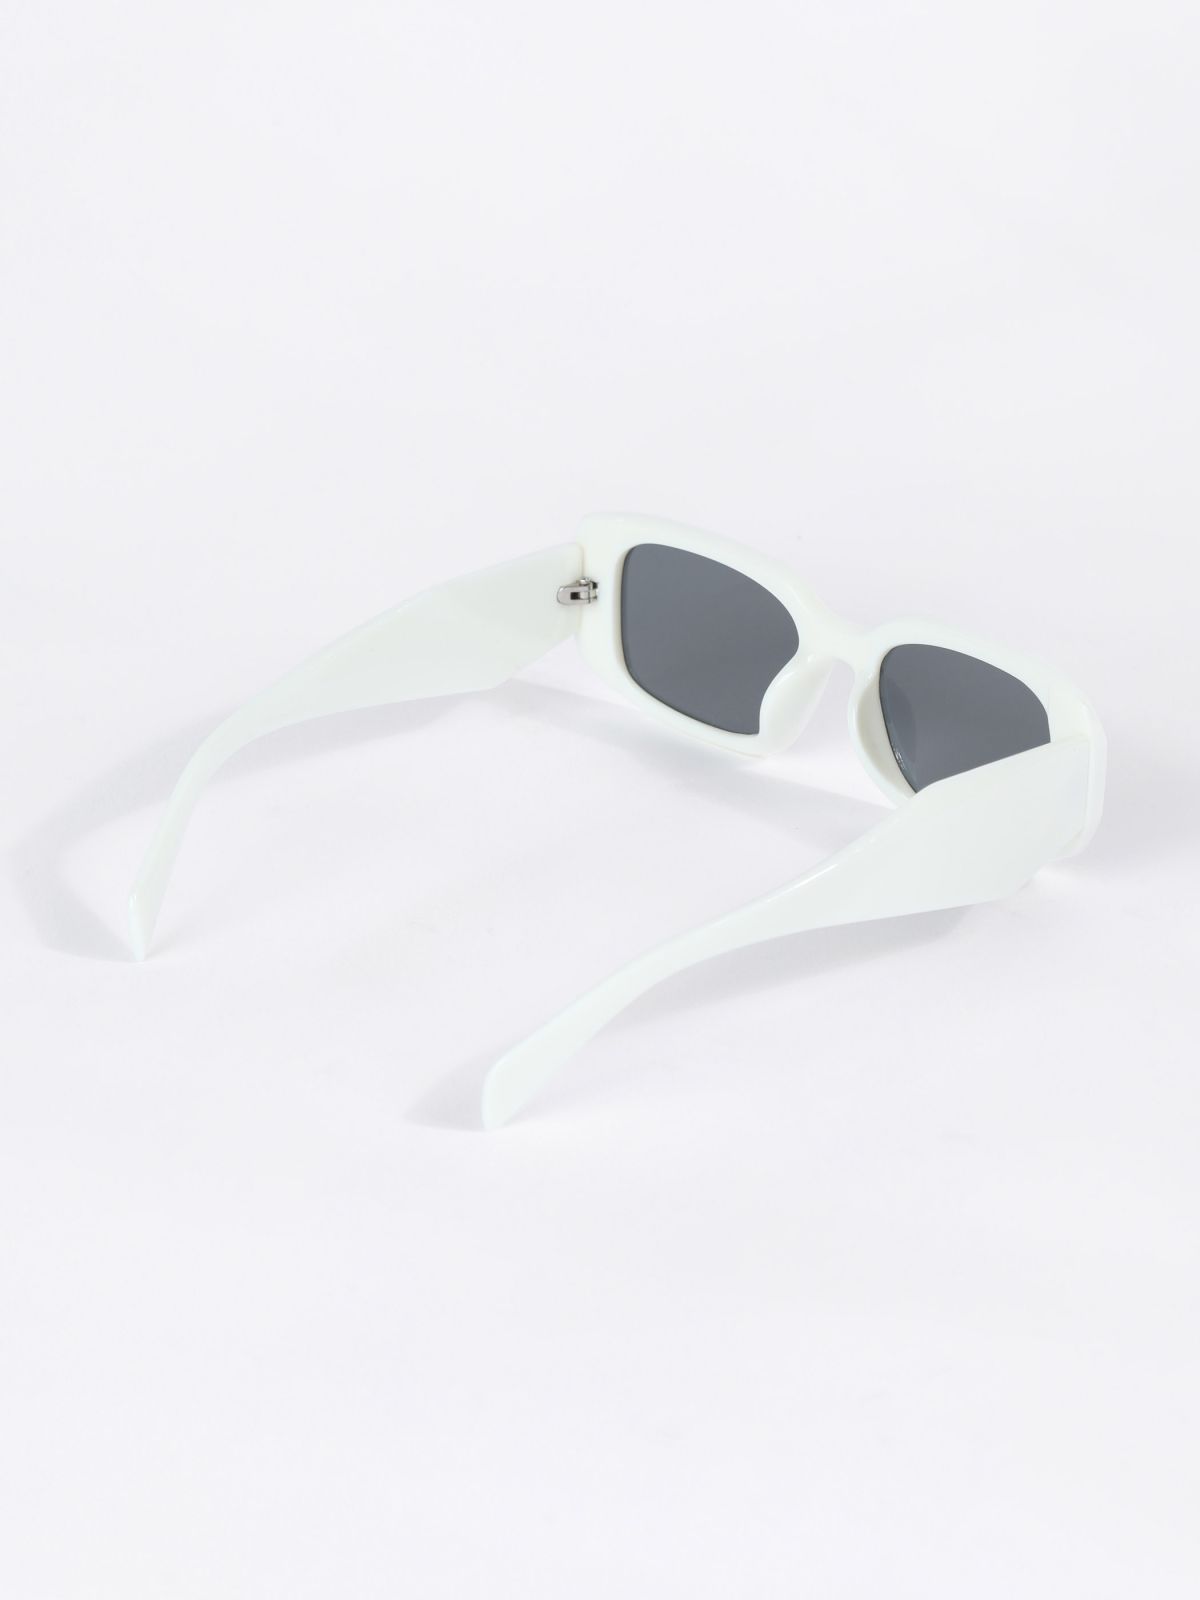  משקפי שמש מלבניים / TX Eyewear Collection של TERMINAL X